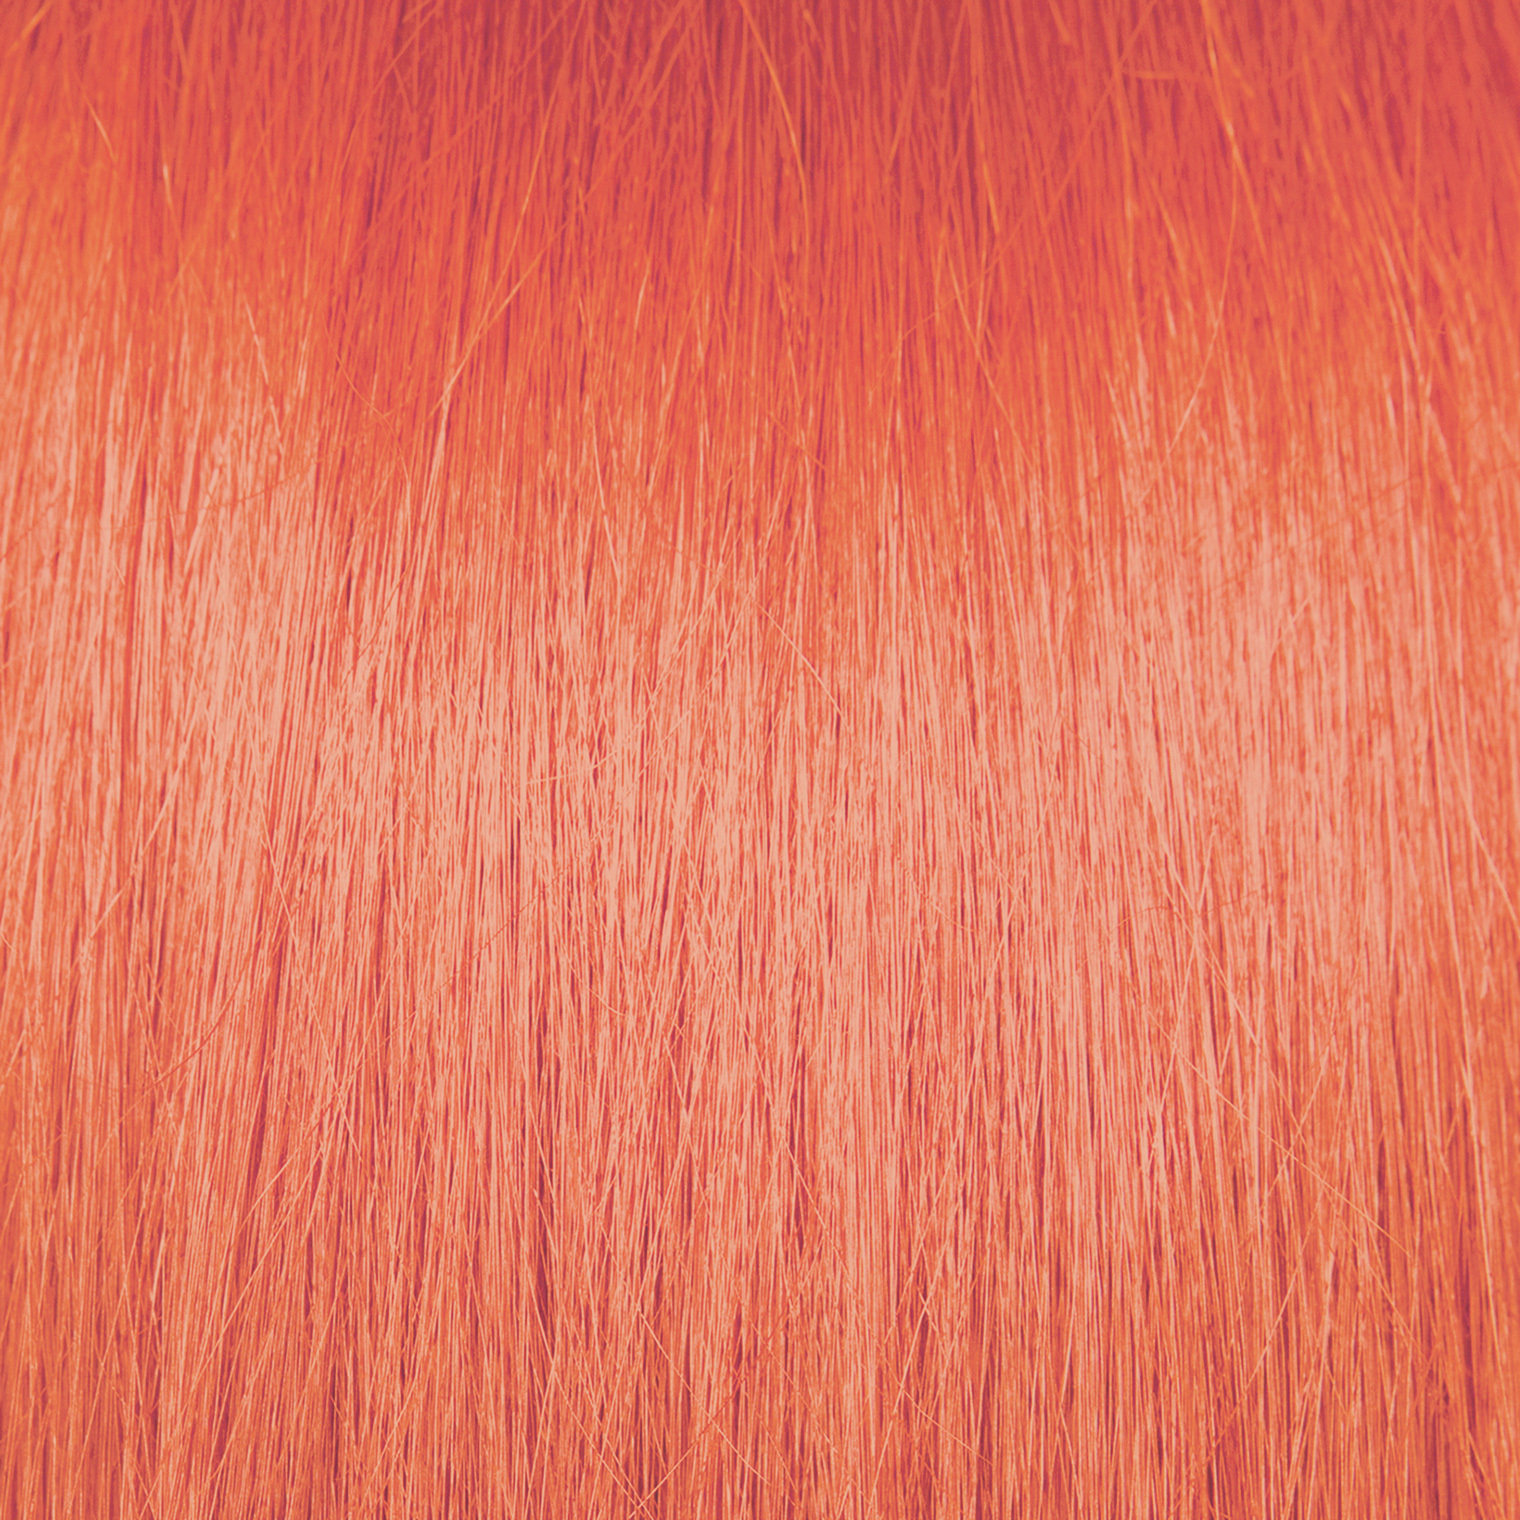 Pravana Chromasilk HydraGloss 7Cr Copper Red Blonde